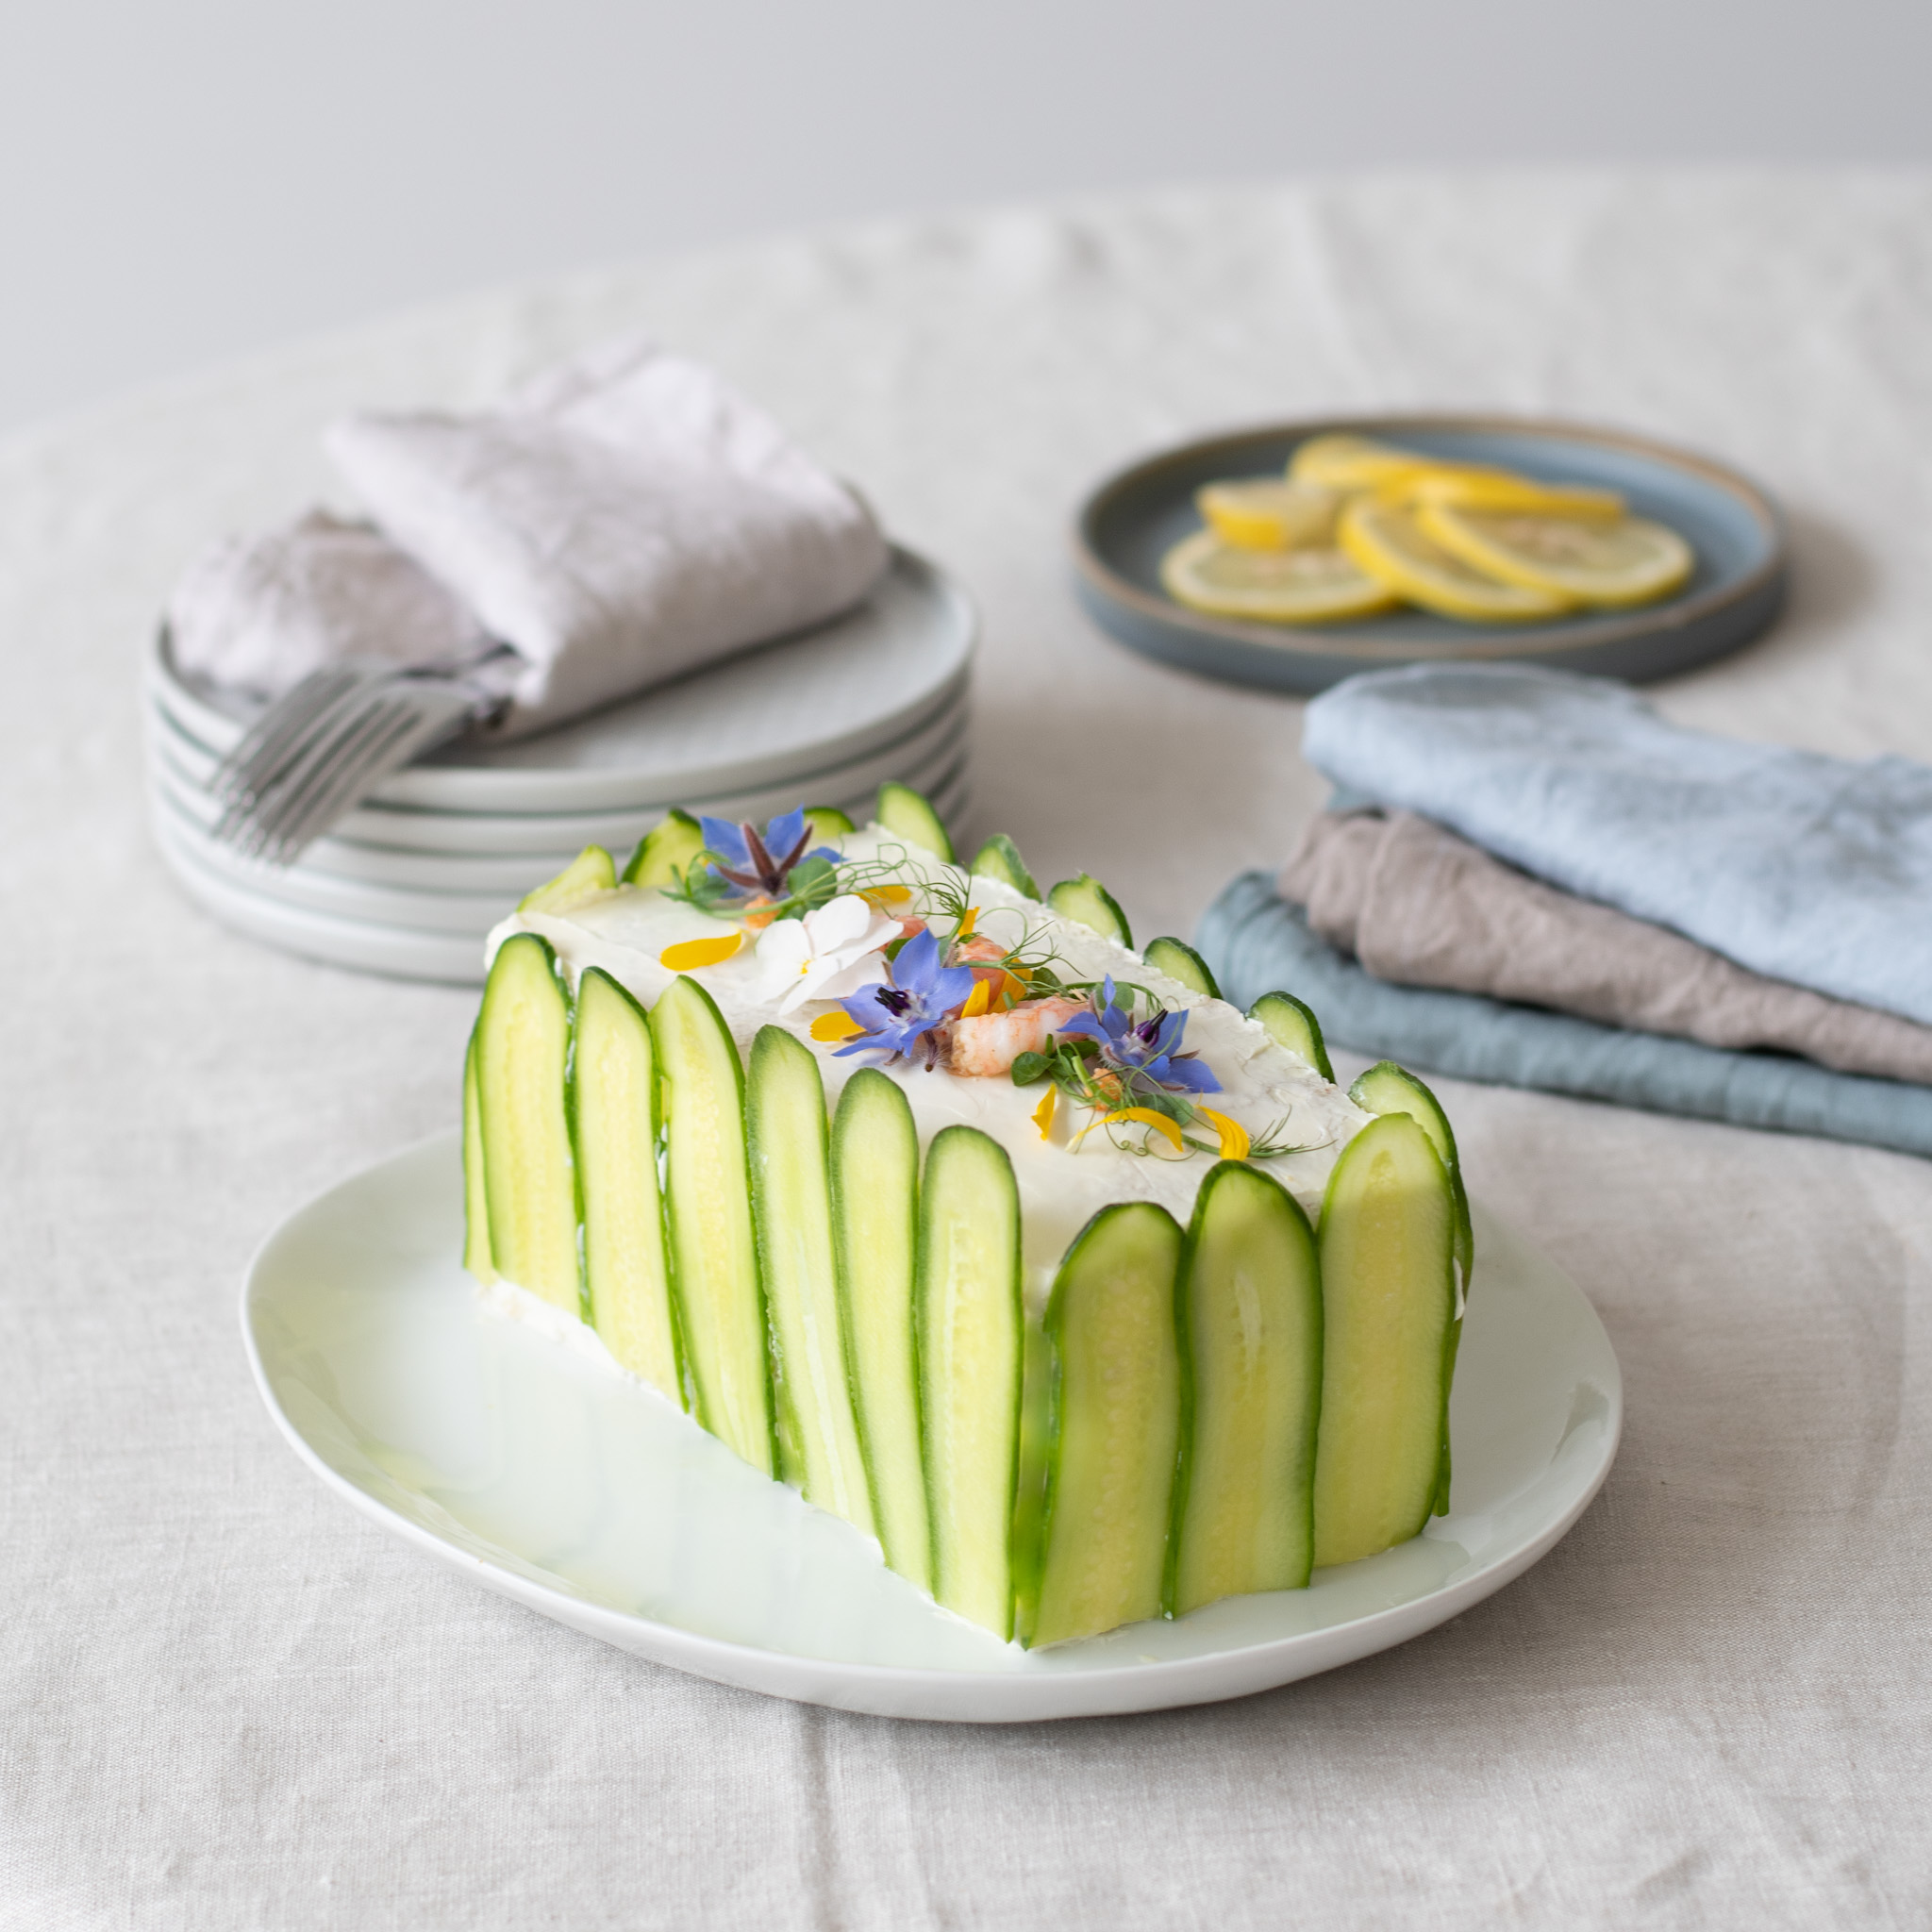 Savoury cakes and snacks | lili's cakes